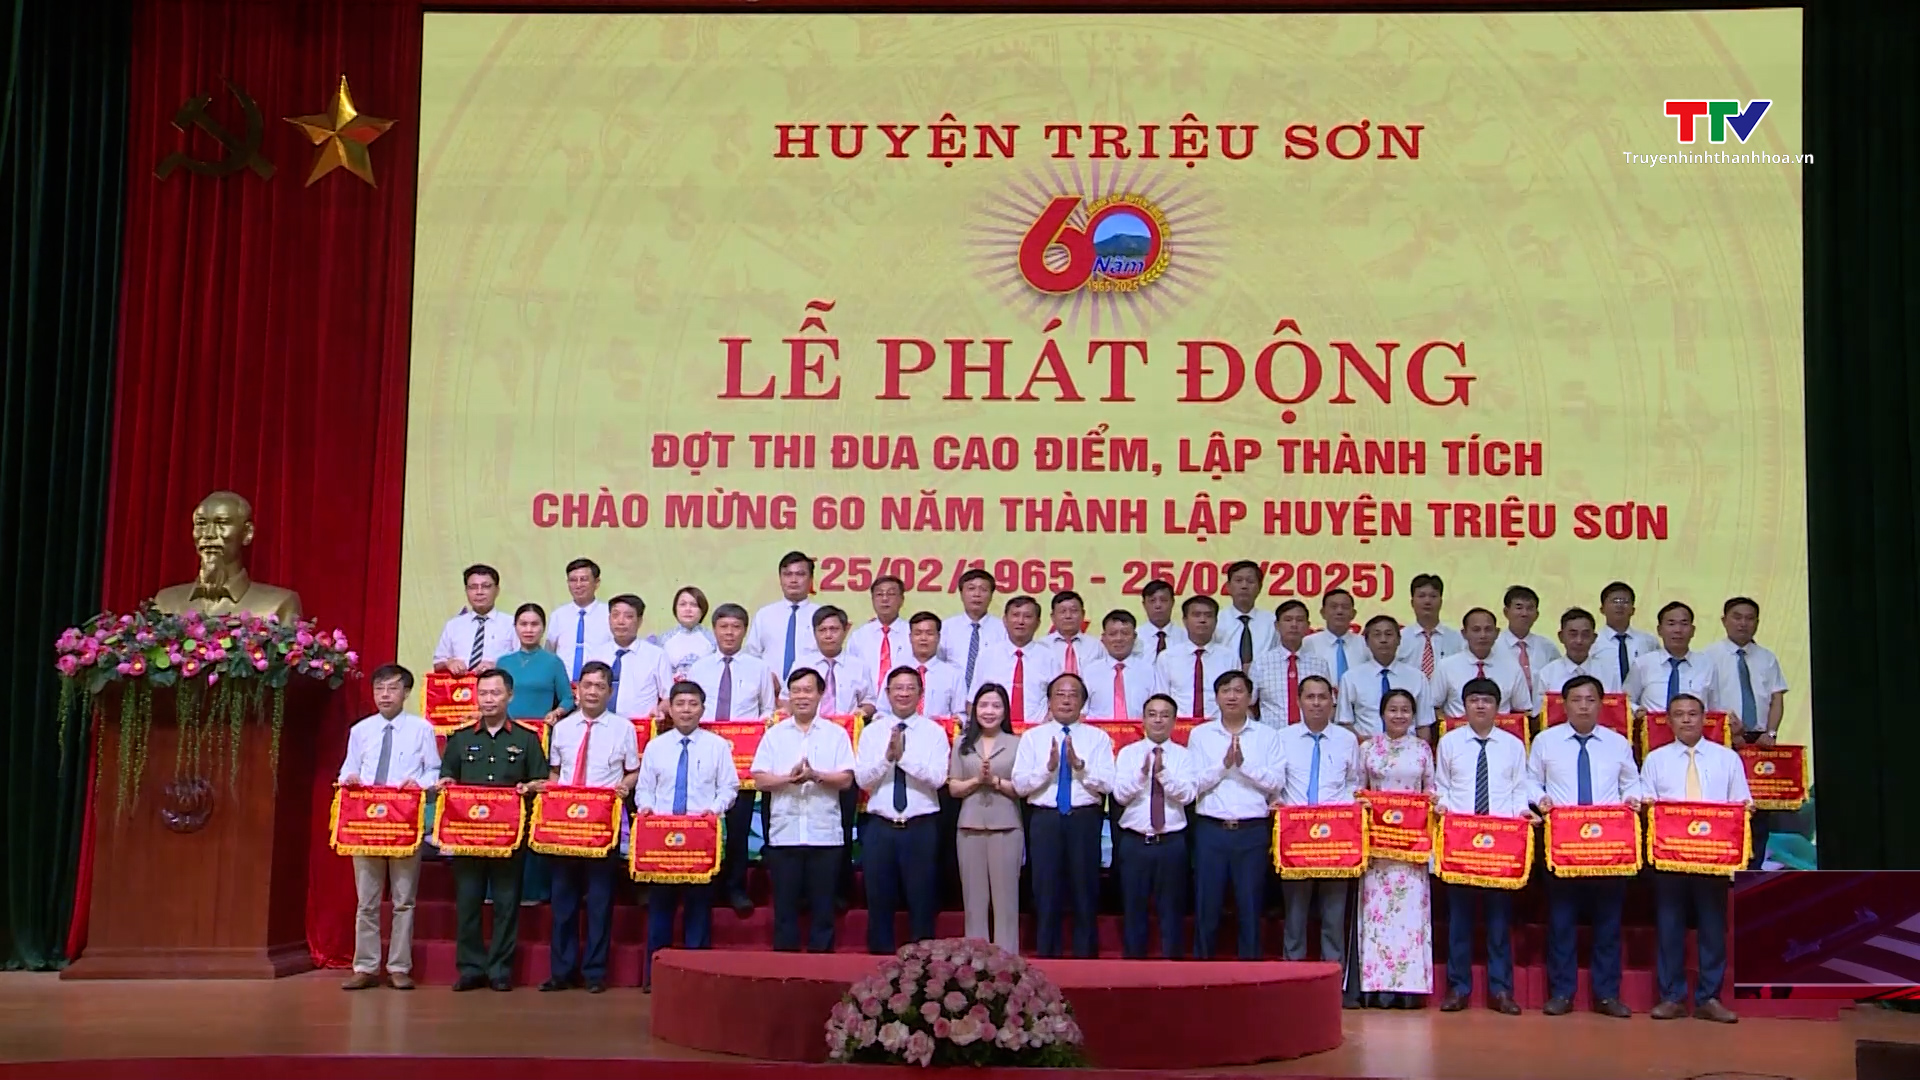 Huyện Triệu Sơn phát động đợt thi đua cao điểm chào mừng 60 năm thành lập huyện- Ảnh 2.